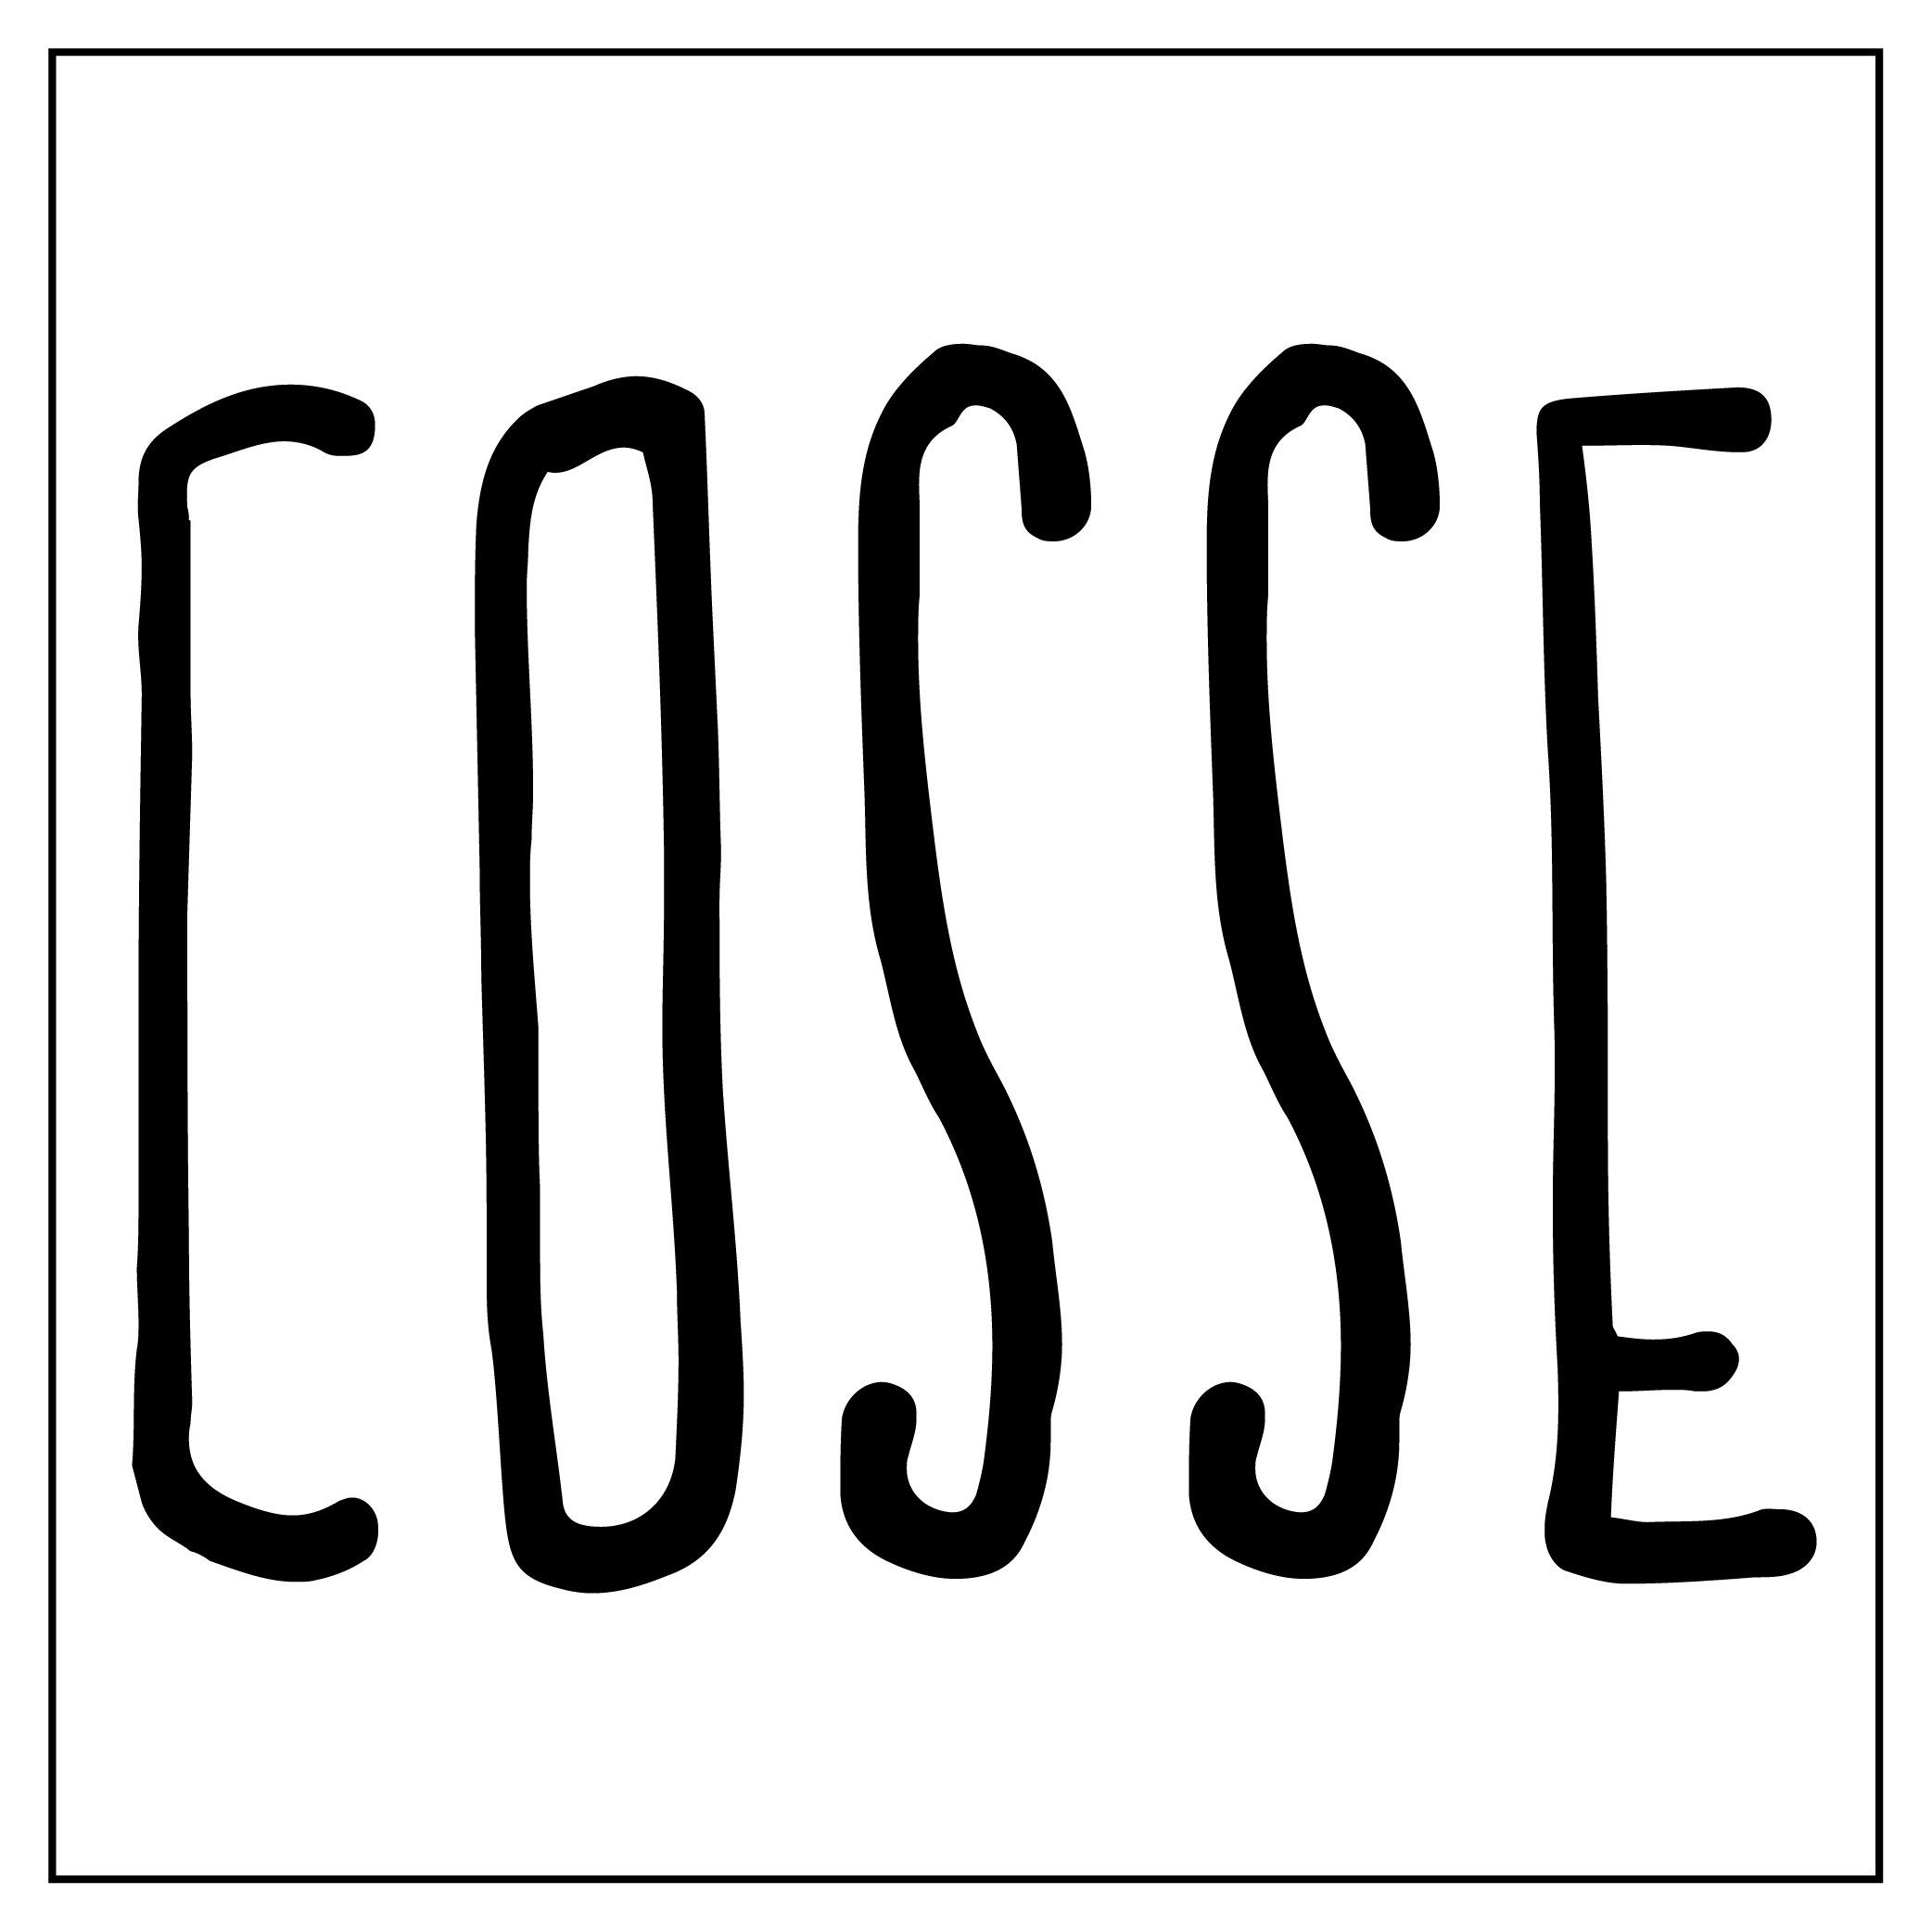 Cosse